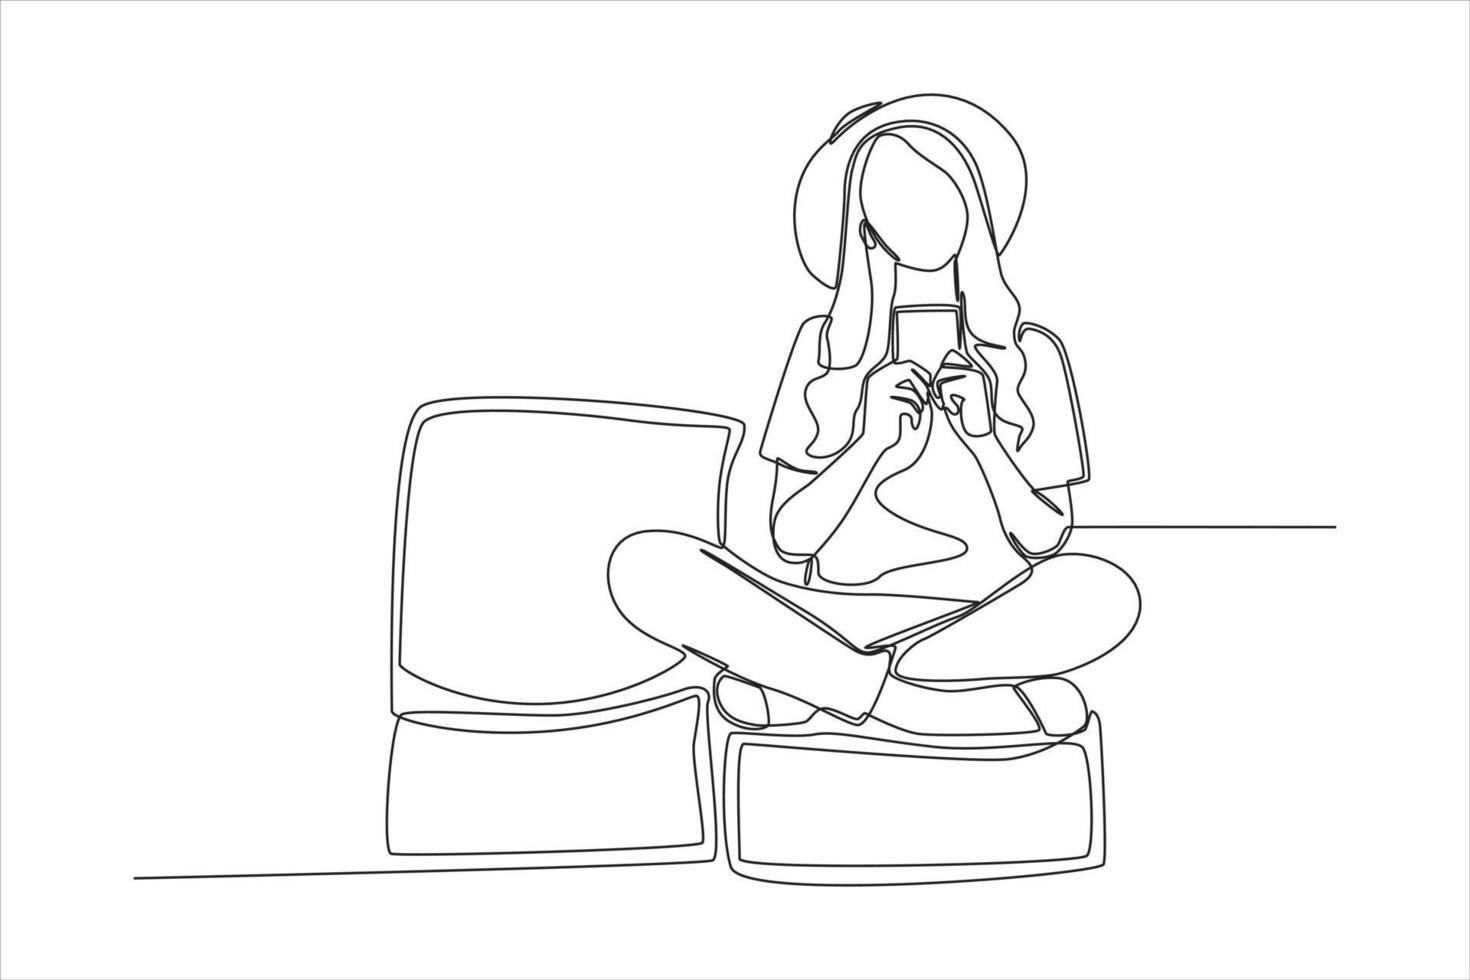 única mulher de desenho de linha senta-se no aeroporto esperando um voo e usa o telefone. conceito de atividade aeroportuária. linha contínua desenhar design gráfico ilustração vetorial. vetor